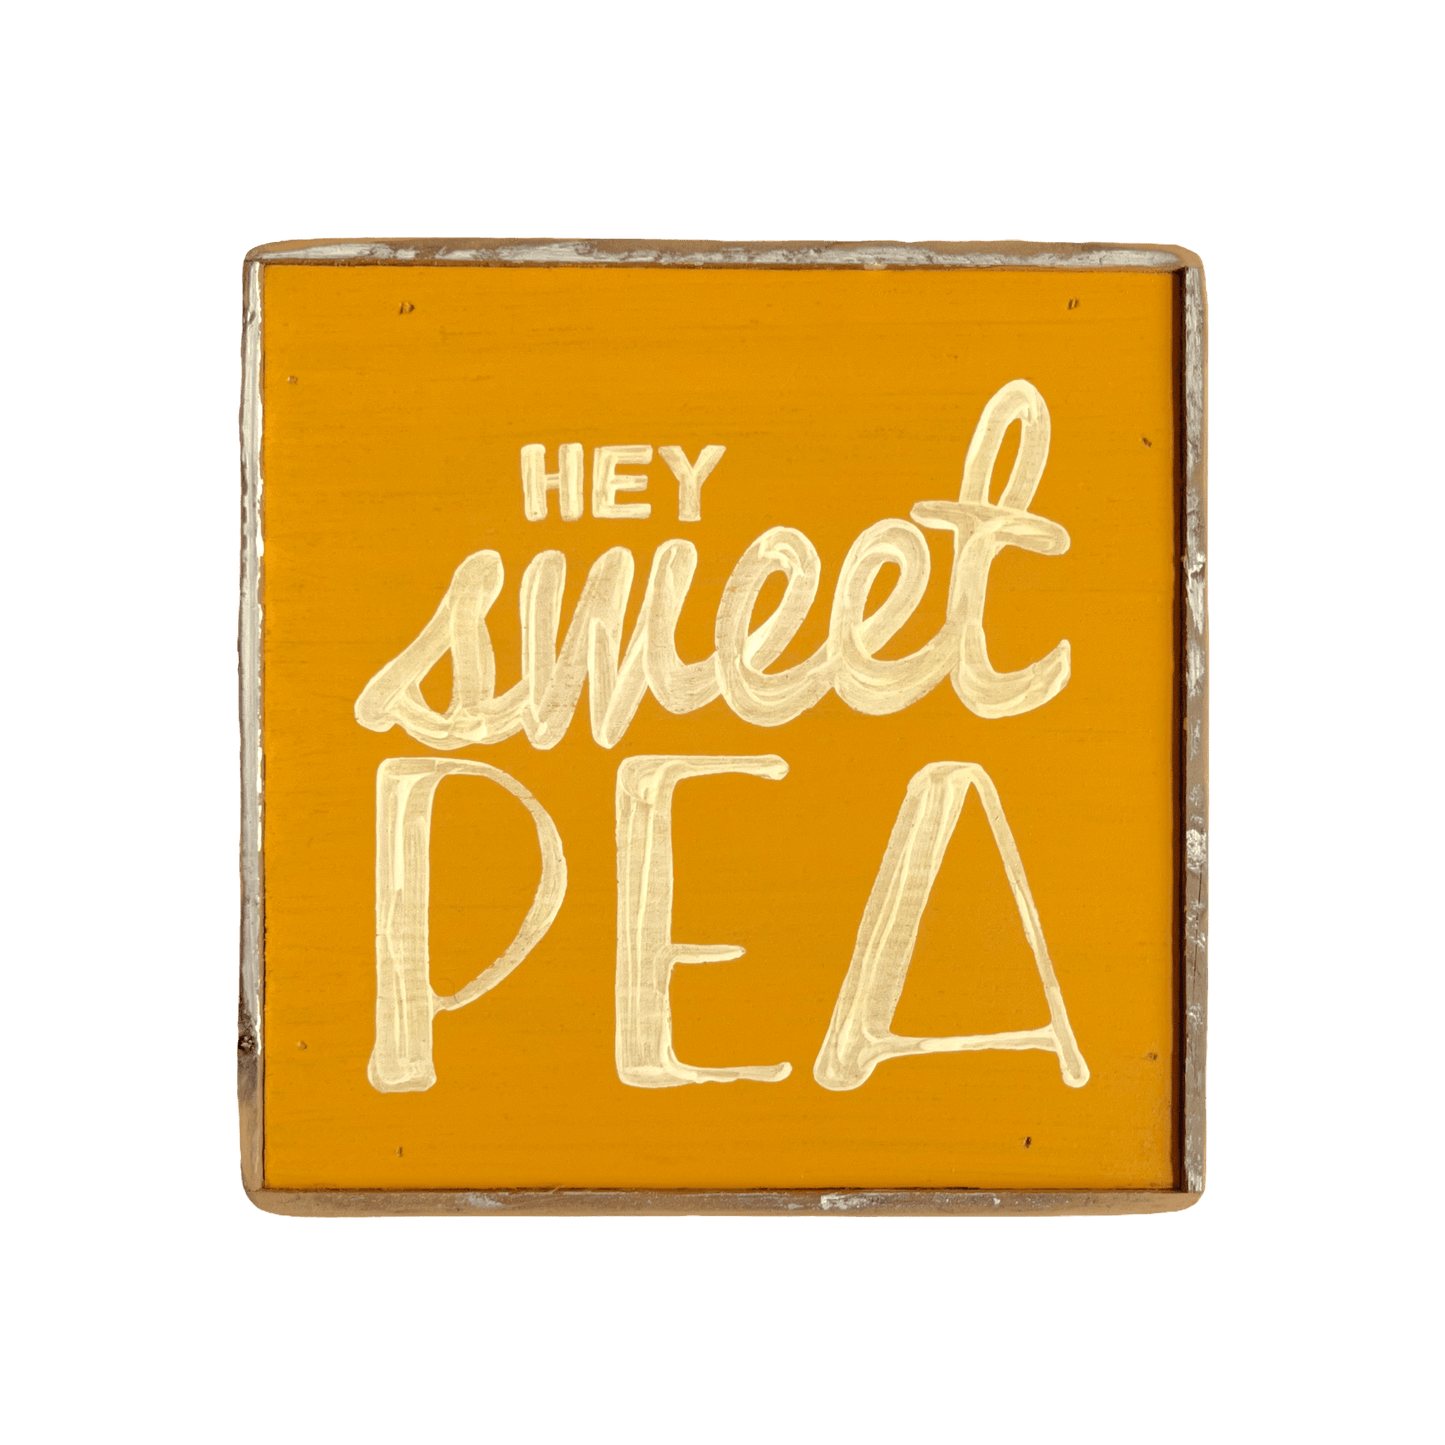 Hey, Sweet Pea - true RED betty